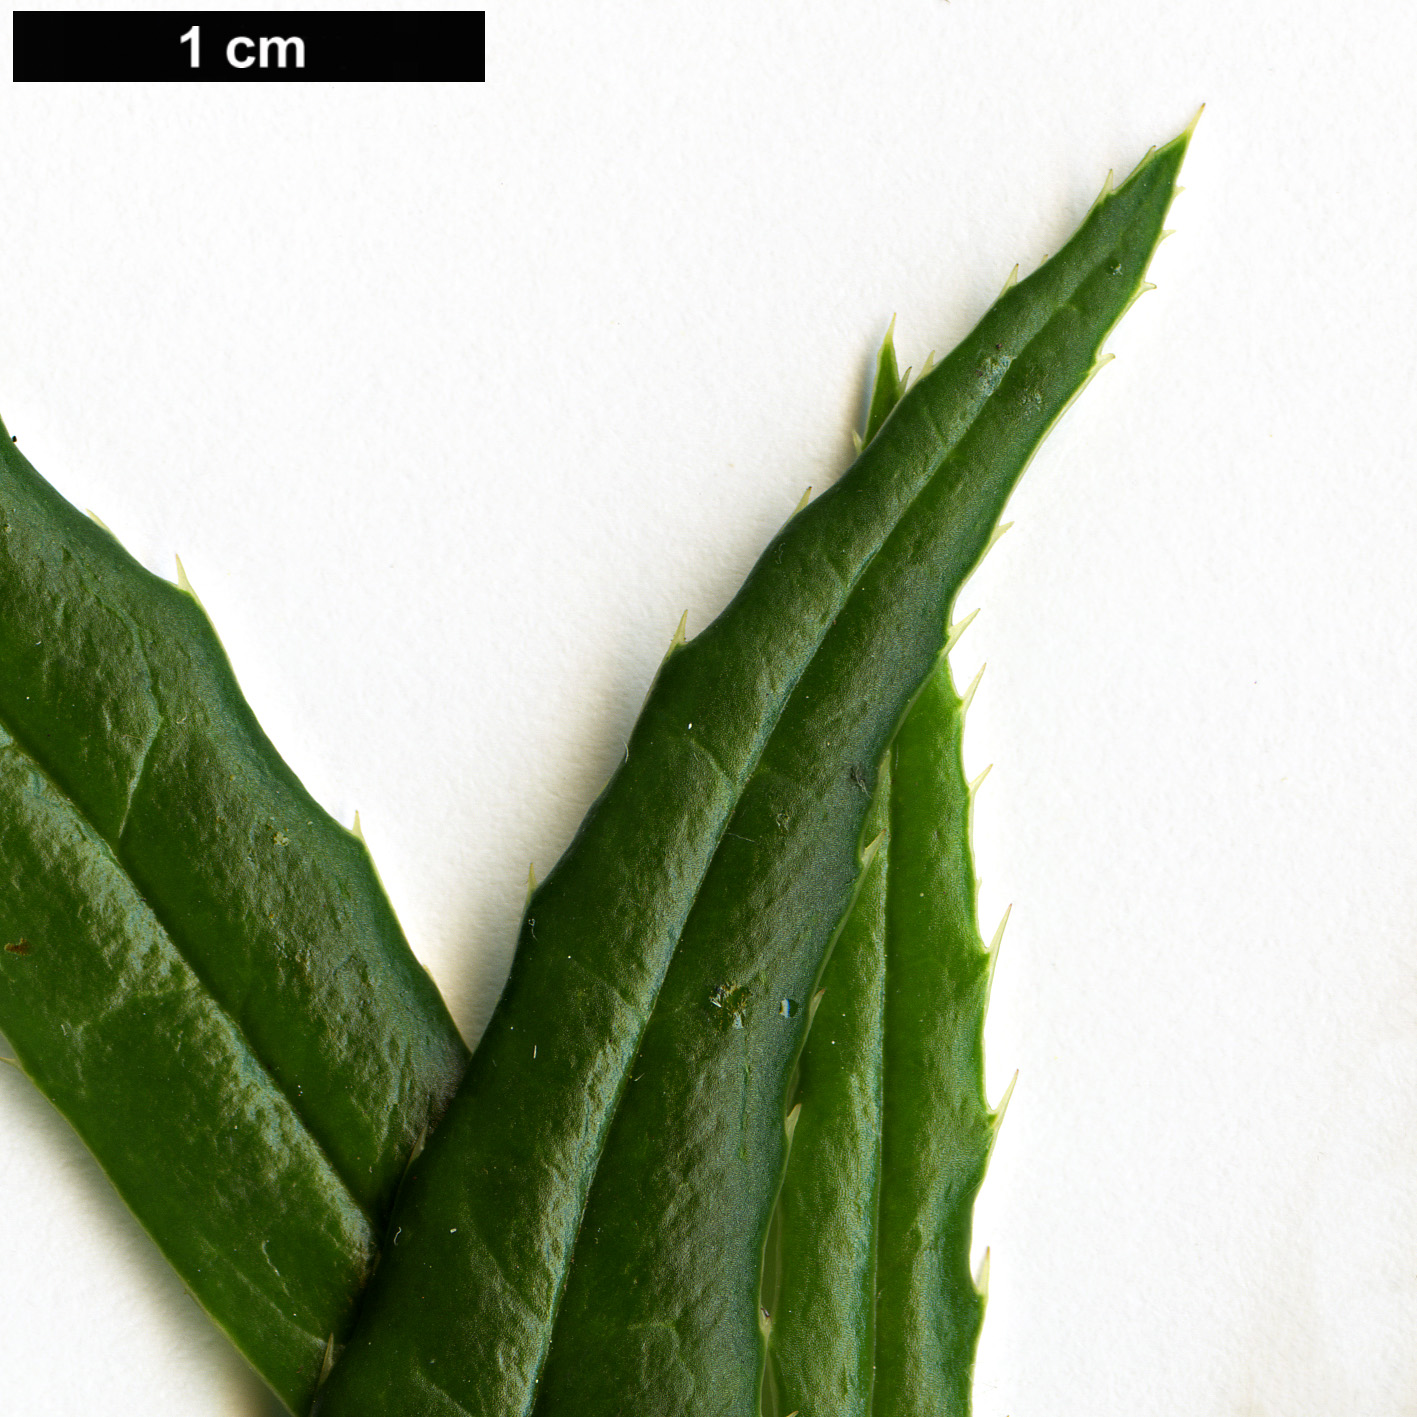 High resolution image: Family: Berberidaceae - Genus: Berberis - Taxon: yingjingensis